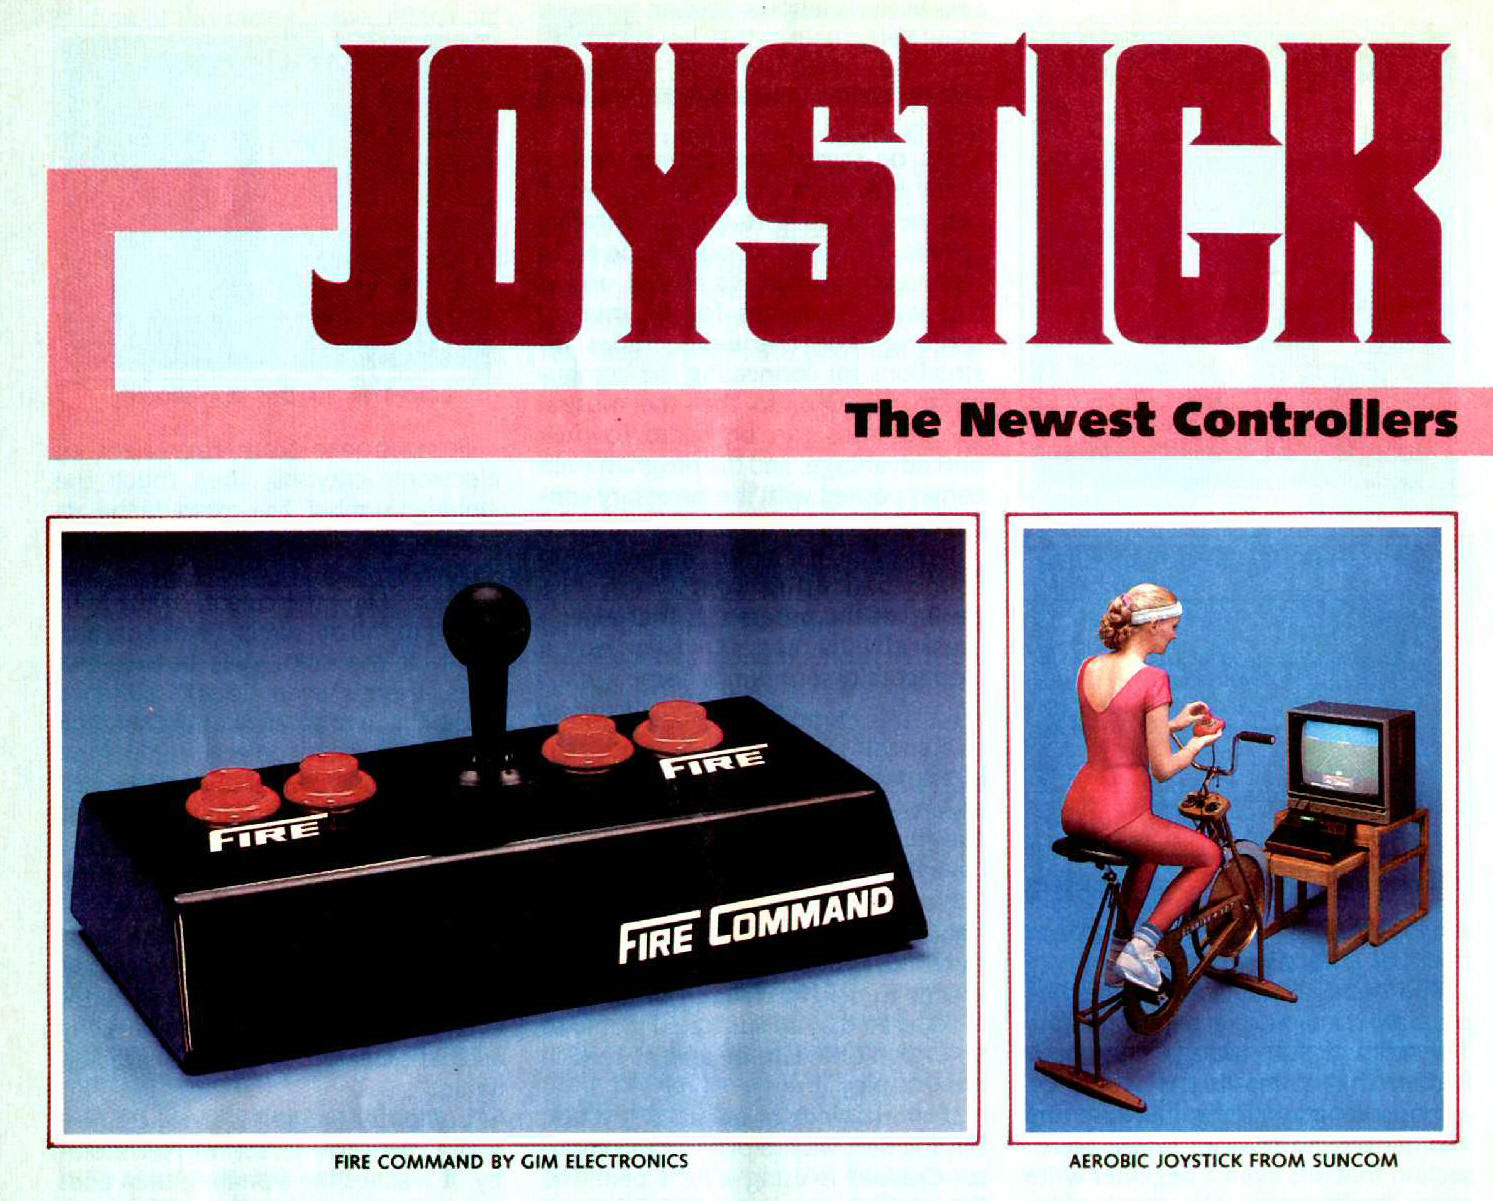 Saiba como executar jogos de Atari no PC  G1 - Tecnologia e Games -  Tira-dúvidas de Tecnologia